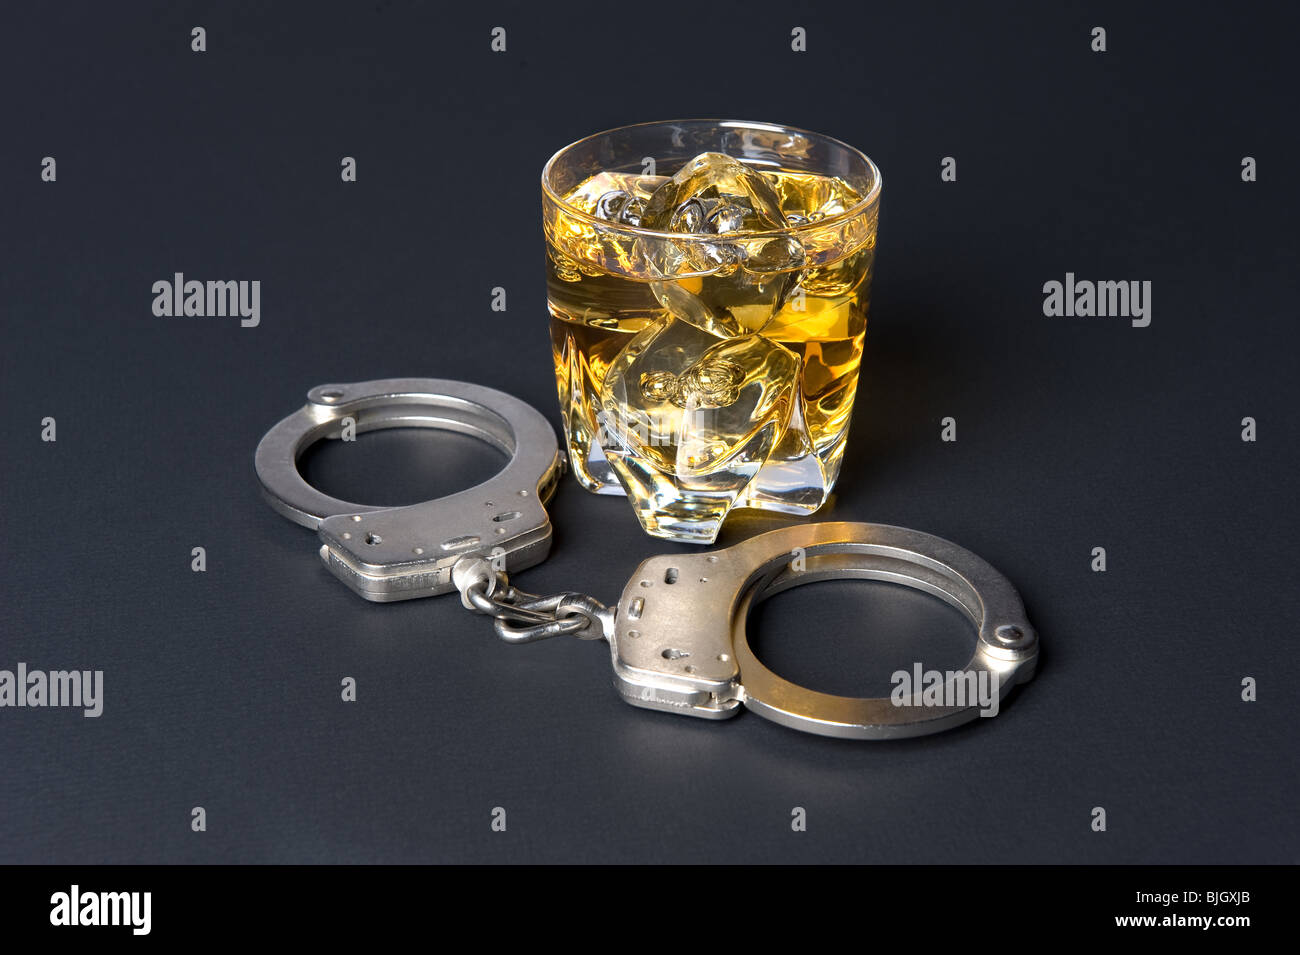 Ein paar Handschellen neben ein Glas Whiskey folgert, dass fahren unter Alkoholeinfluss illegal ist. Stockfoto